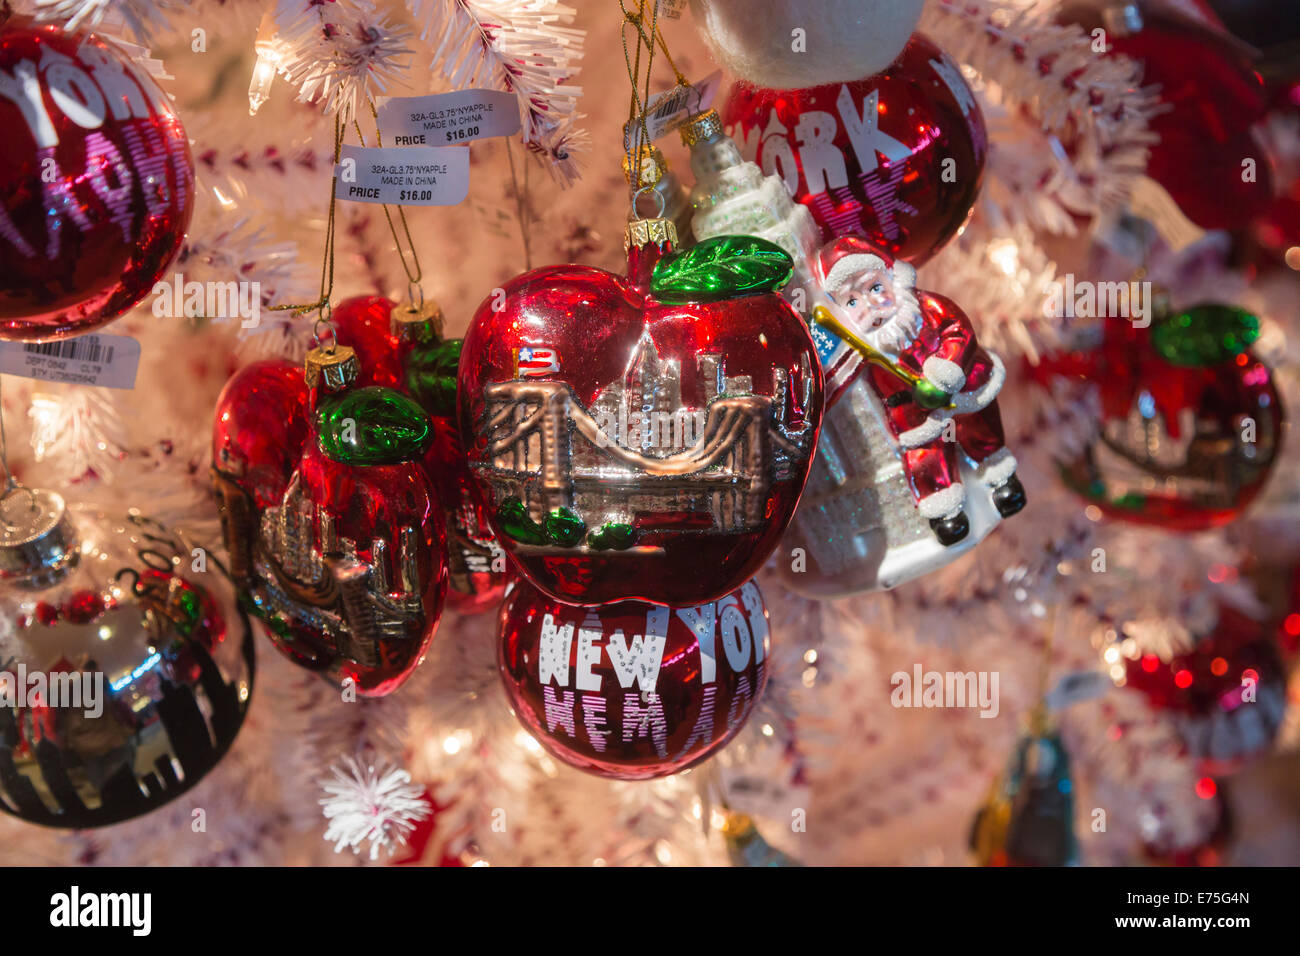 New York Souvenir Christbaumschmuck auf ein Weihnachtsbaum auf dem Display in einem Geschäft in New York City, USA Stockfoto